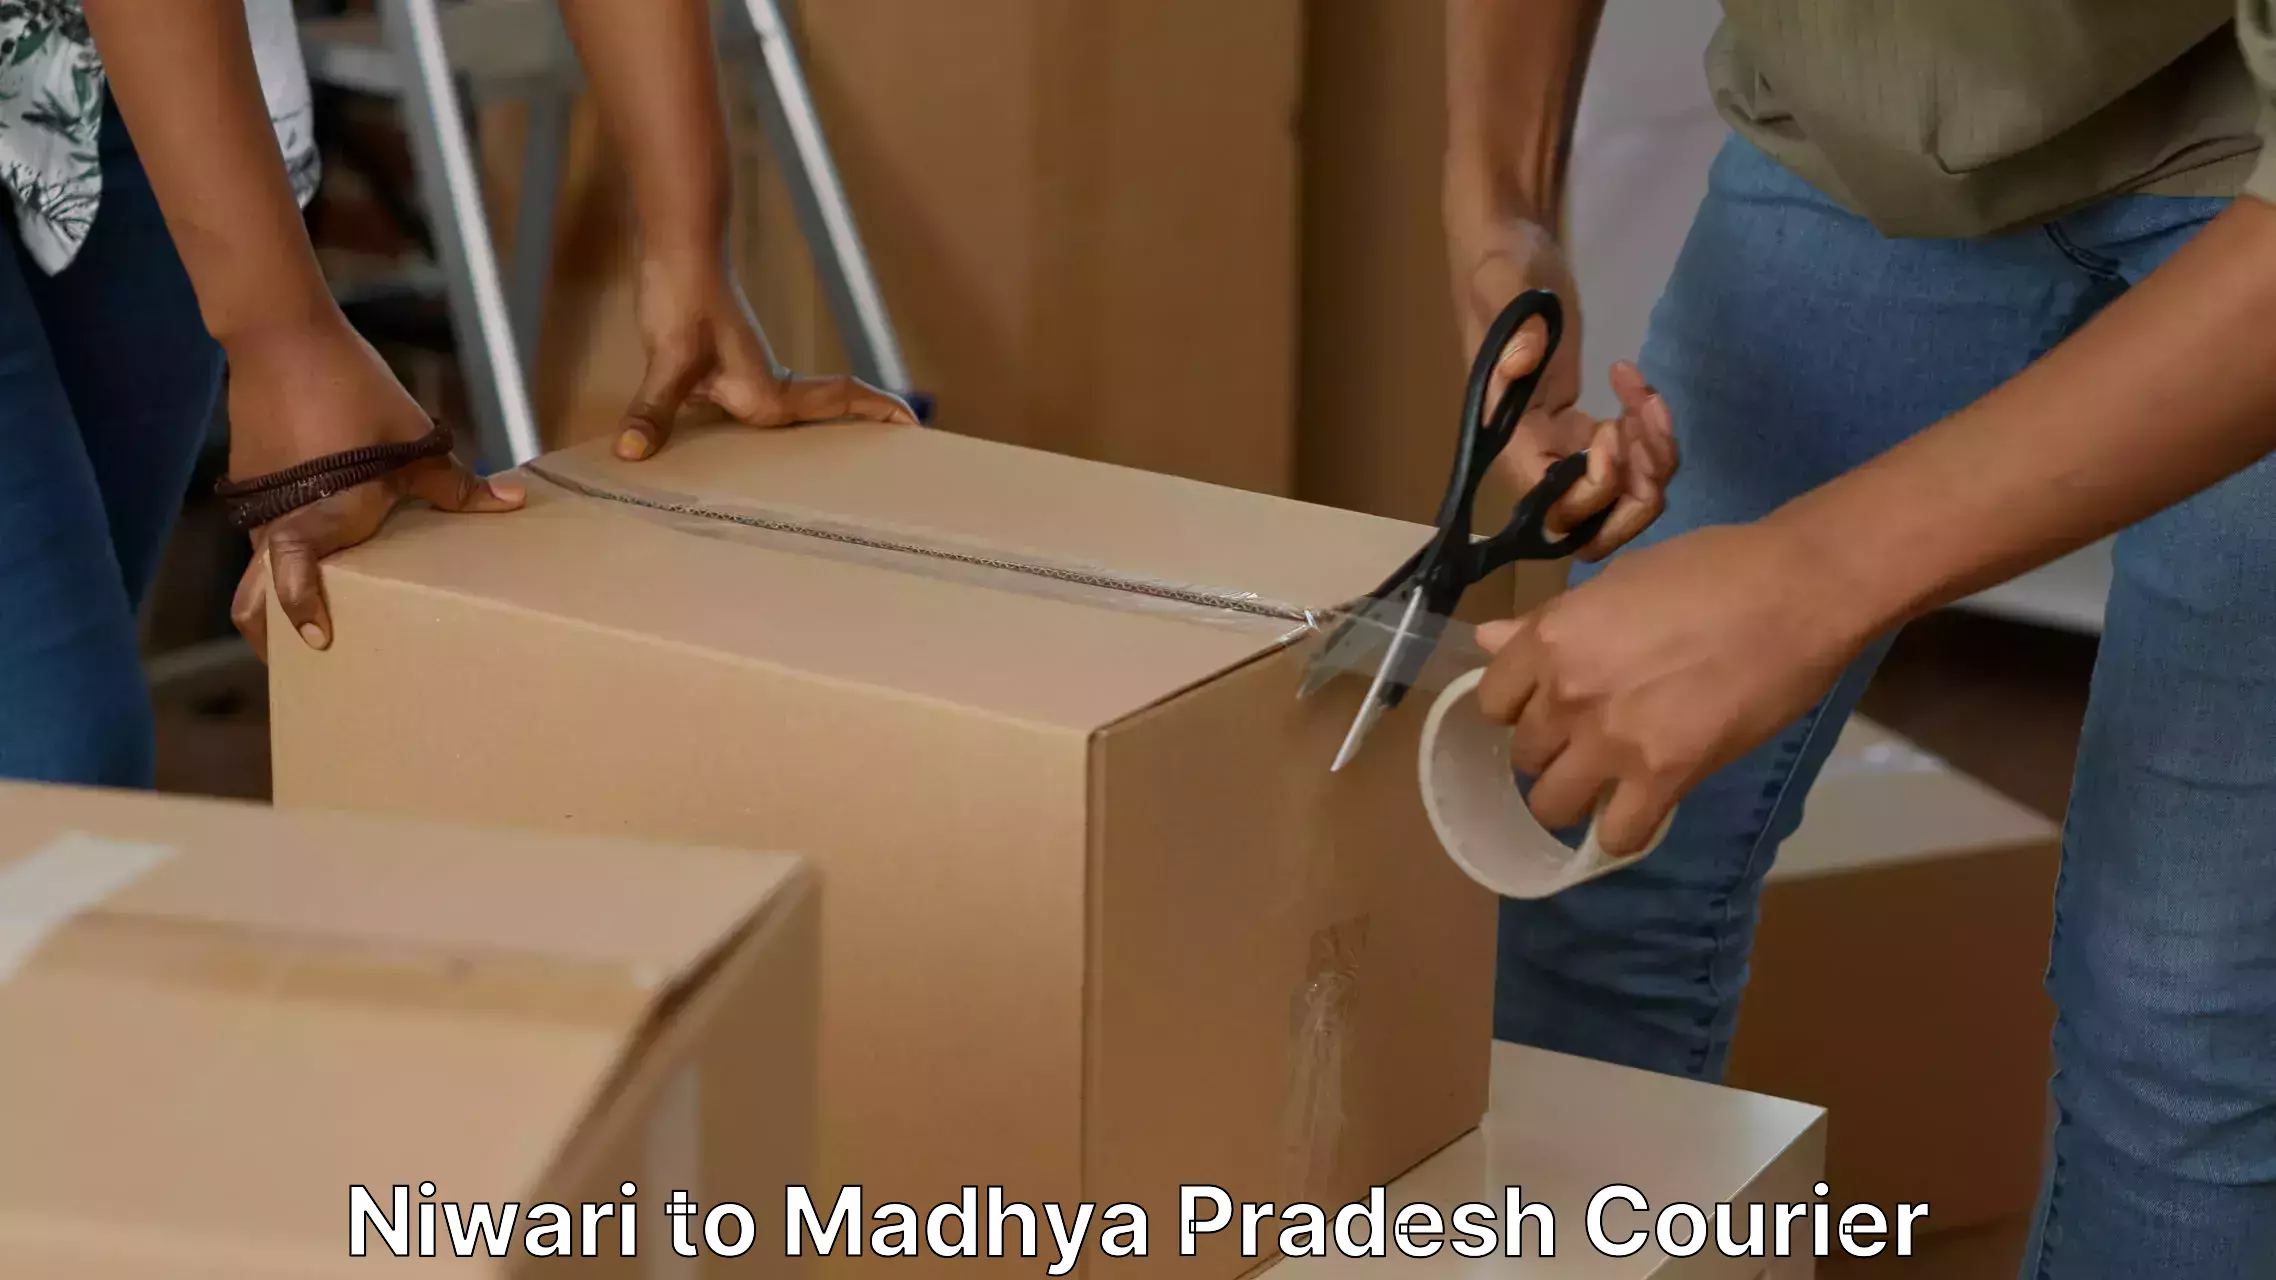 Furniture moving experts Niwari to Madhya Pradesh